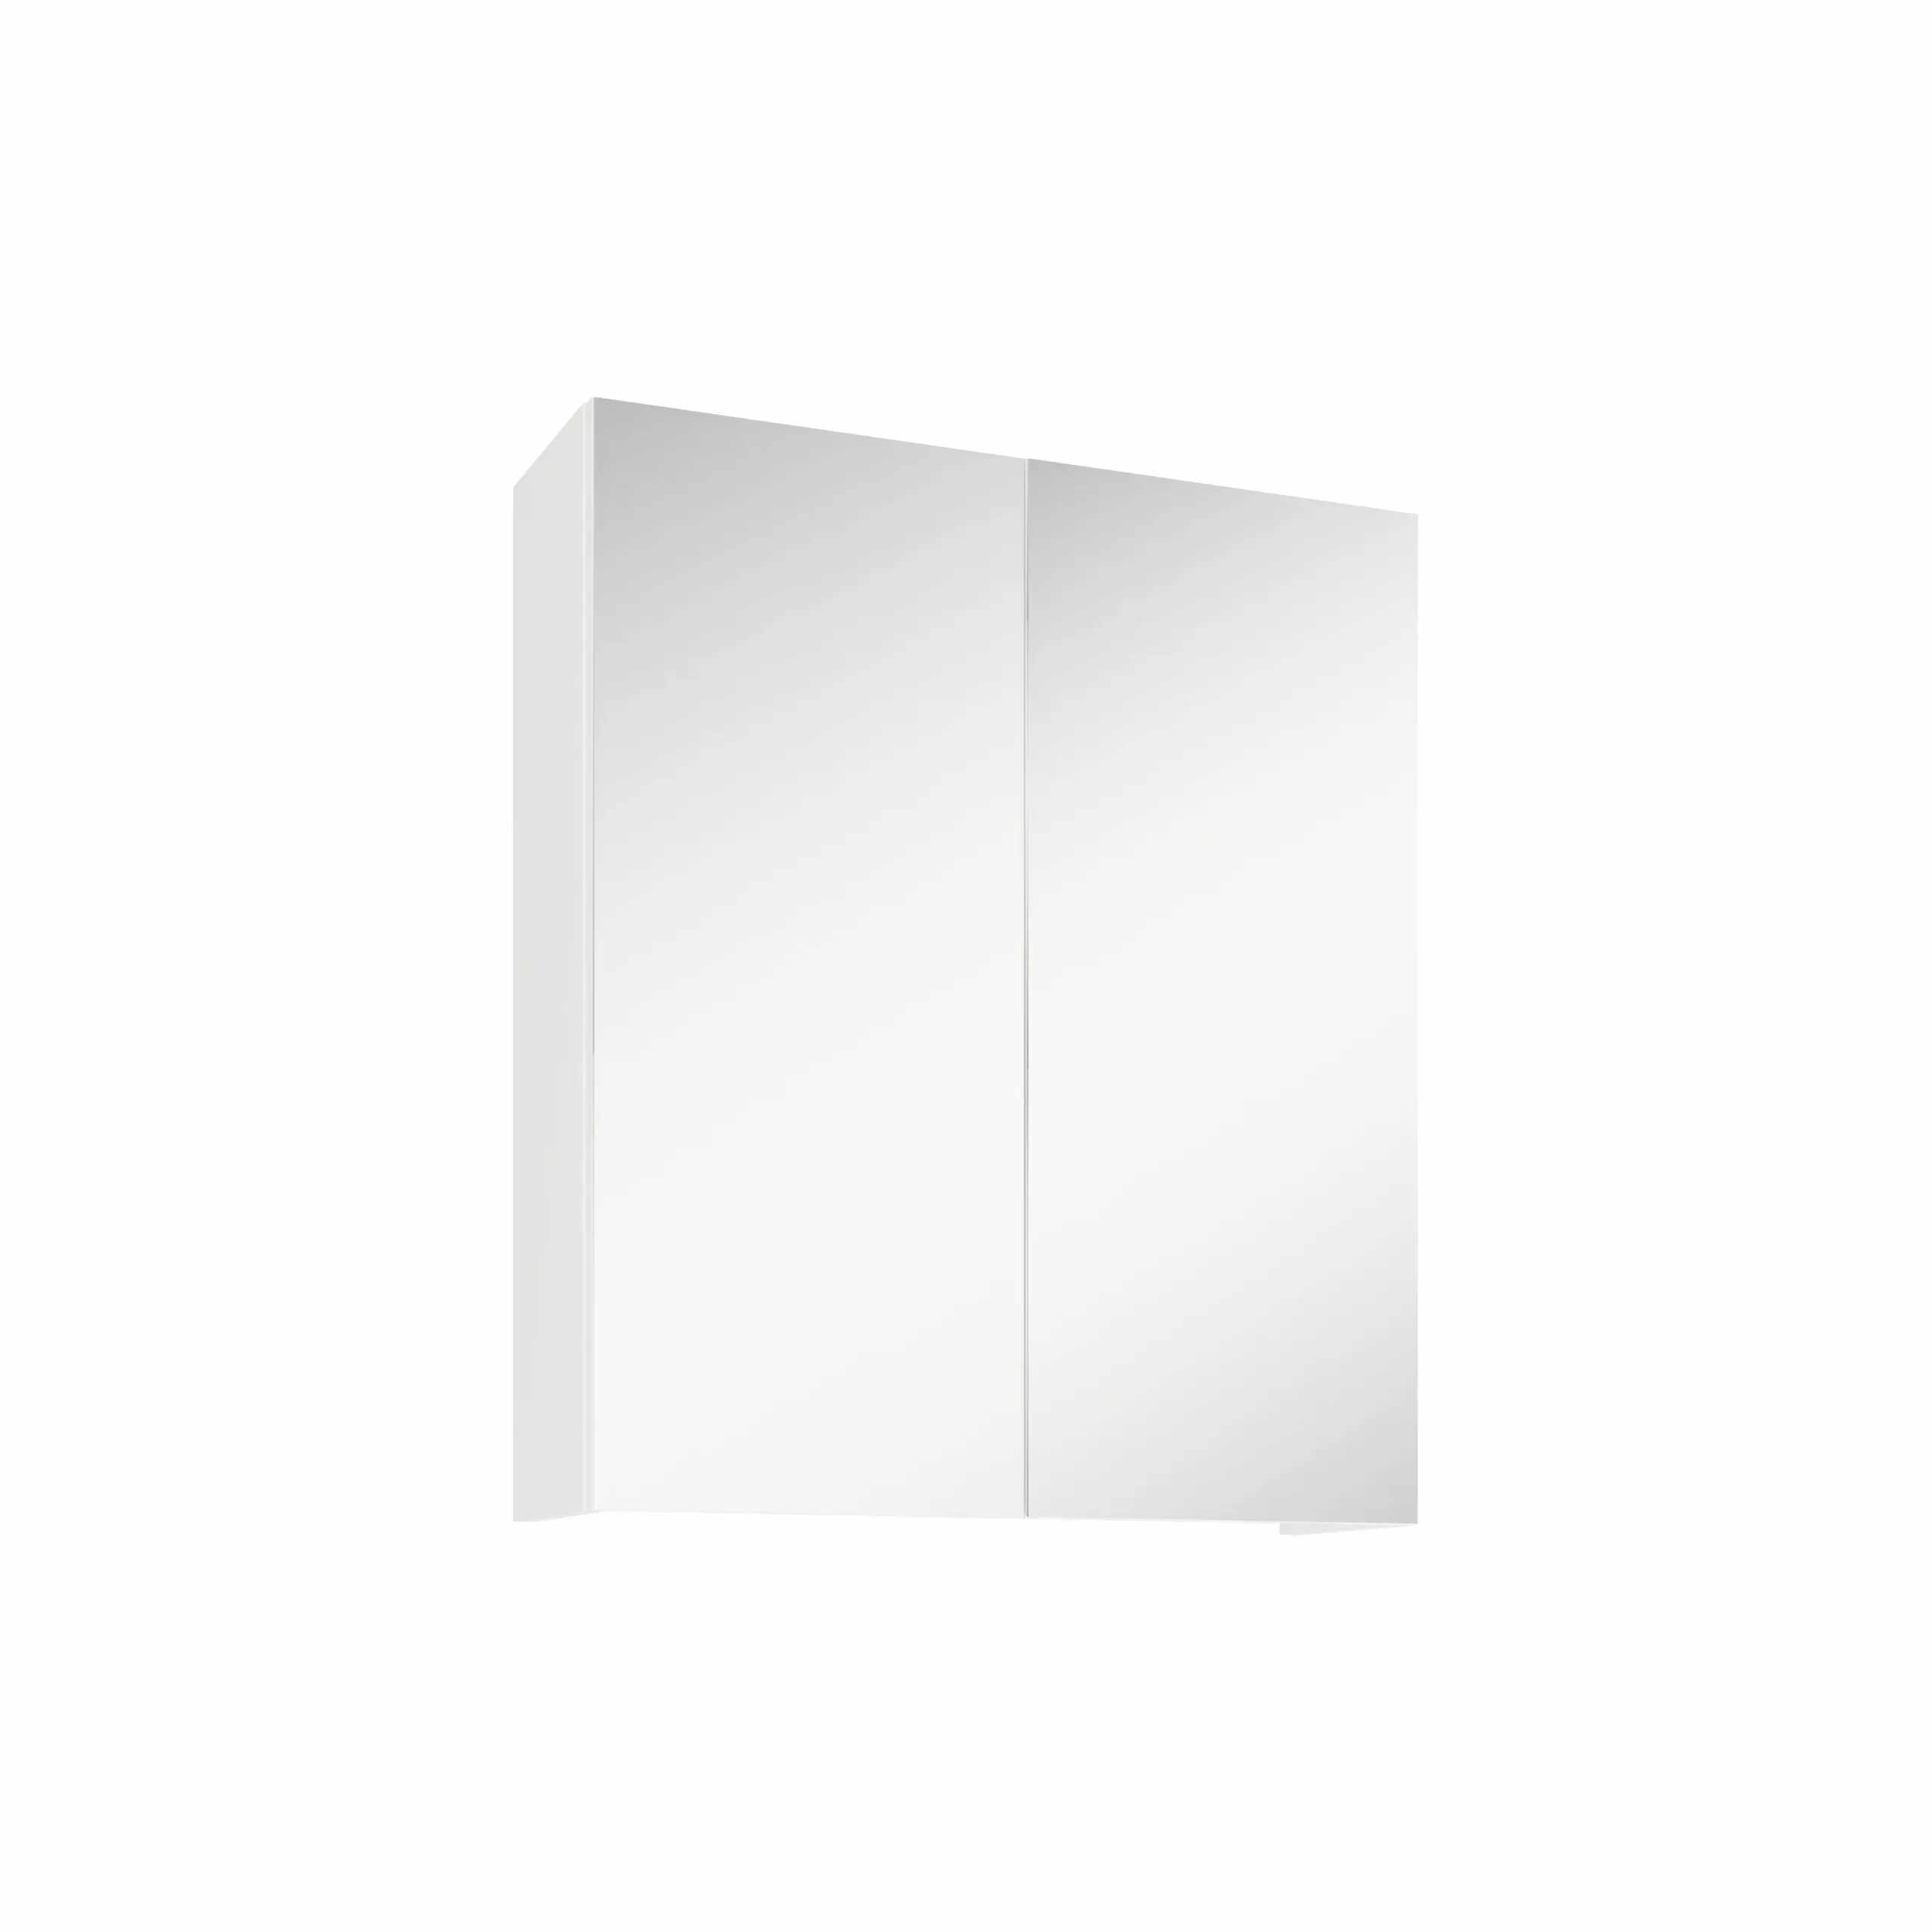 Corp Baie Zed, Suspendat, 2 Usi, cu oglinda, Alb, 60 x 22 x 72 cm